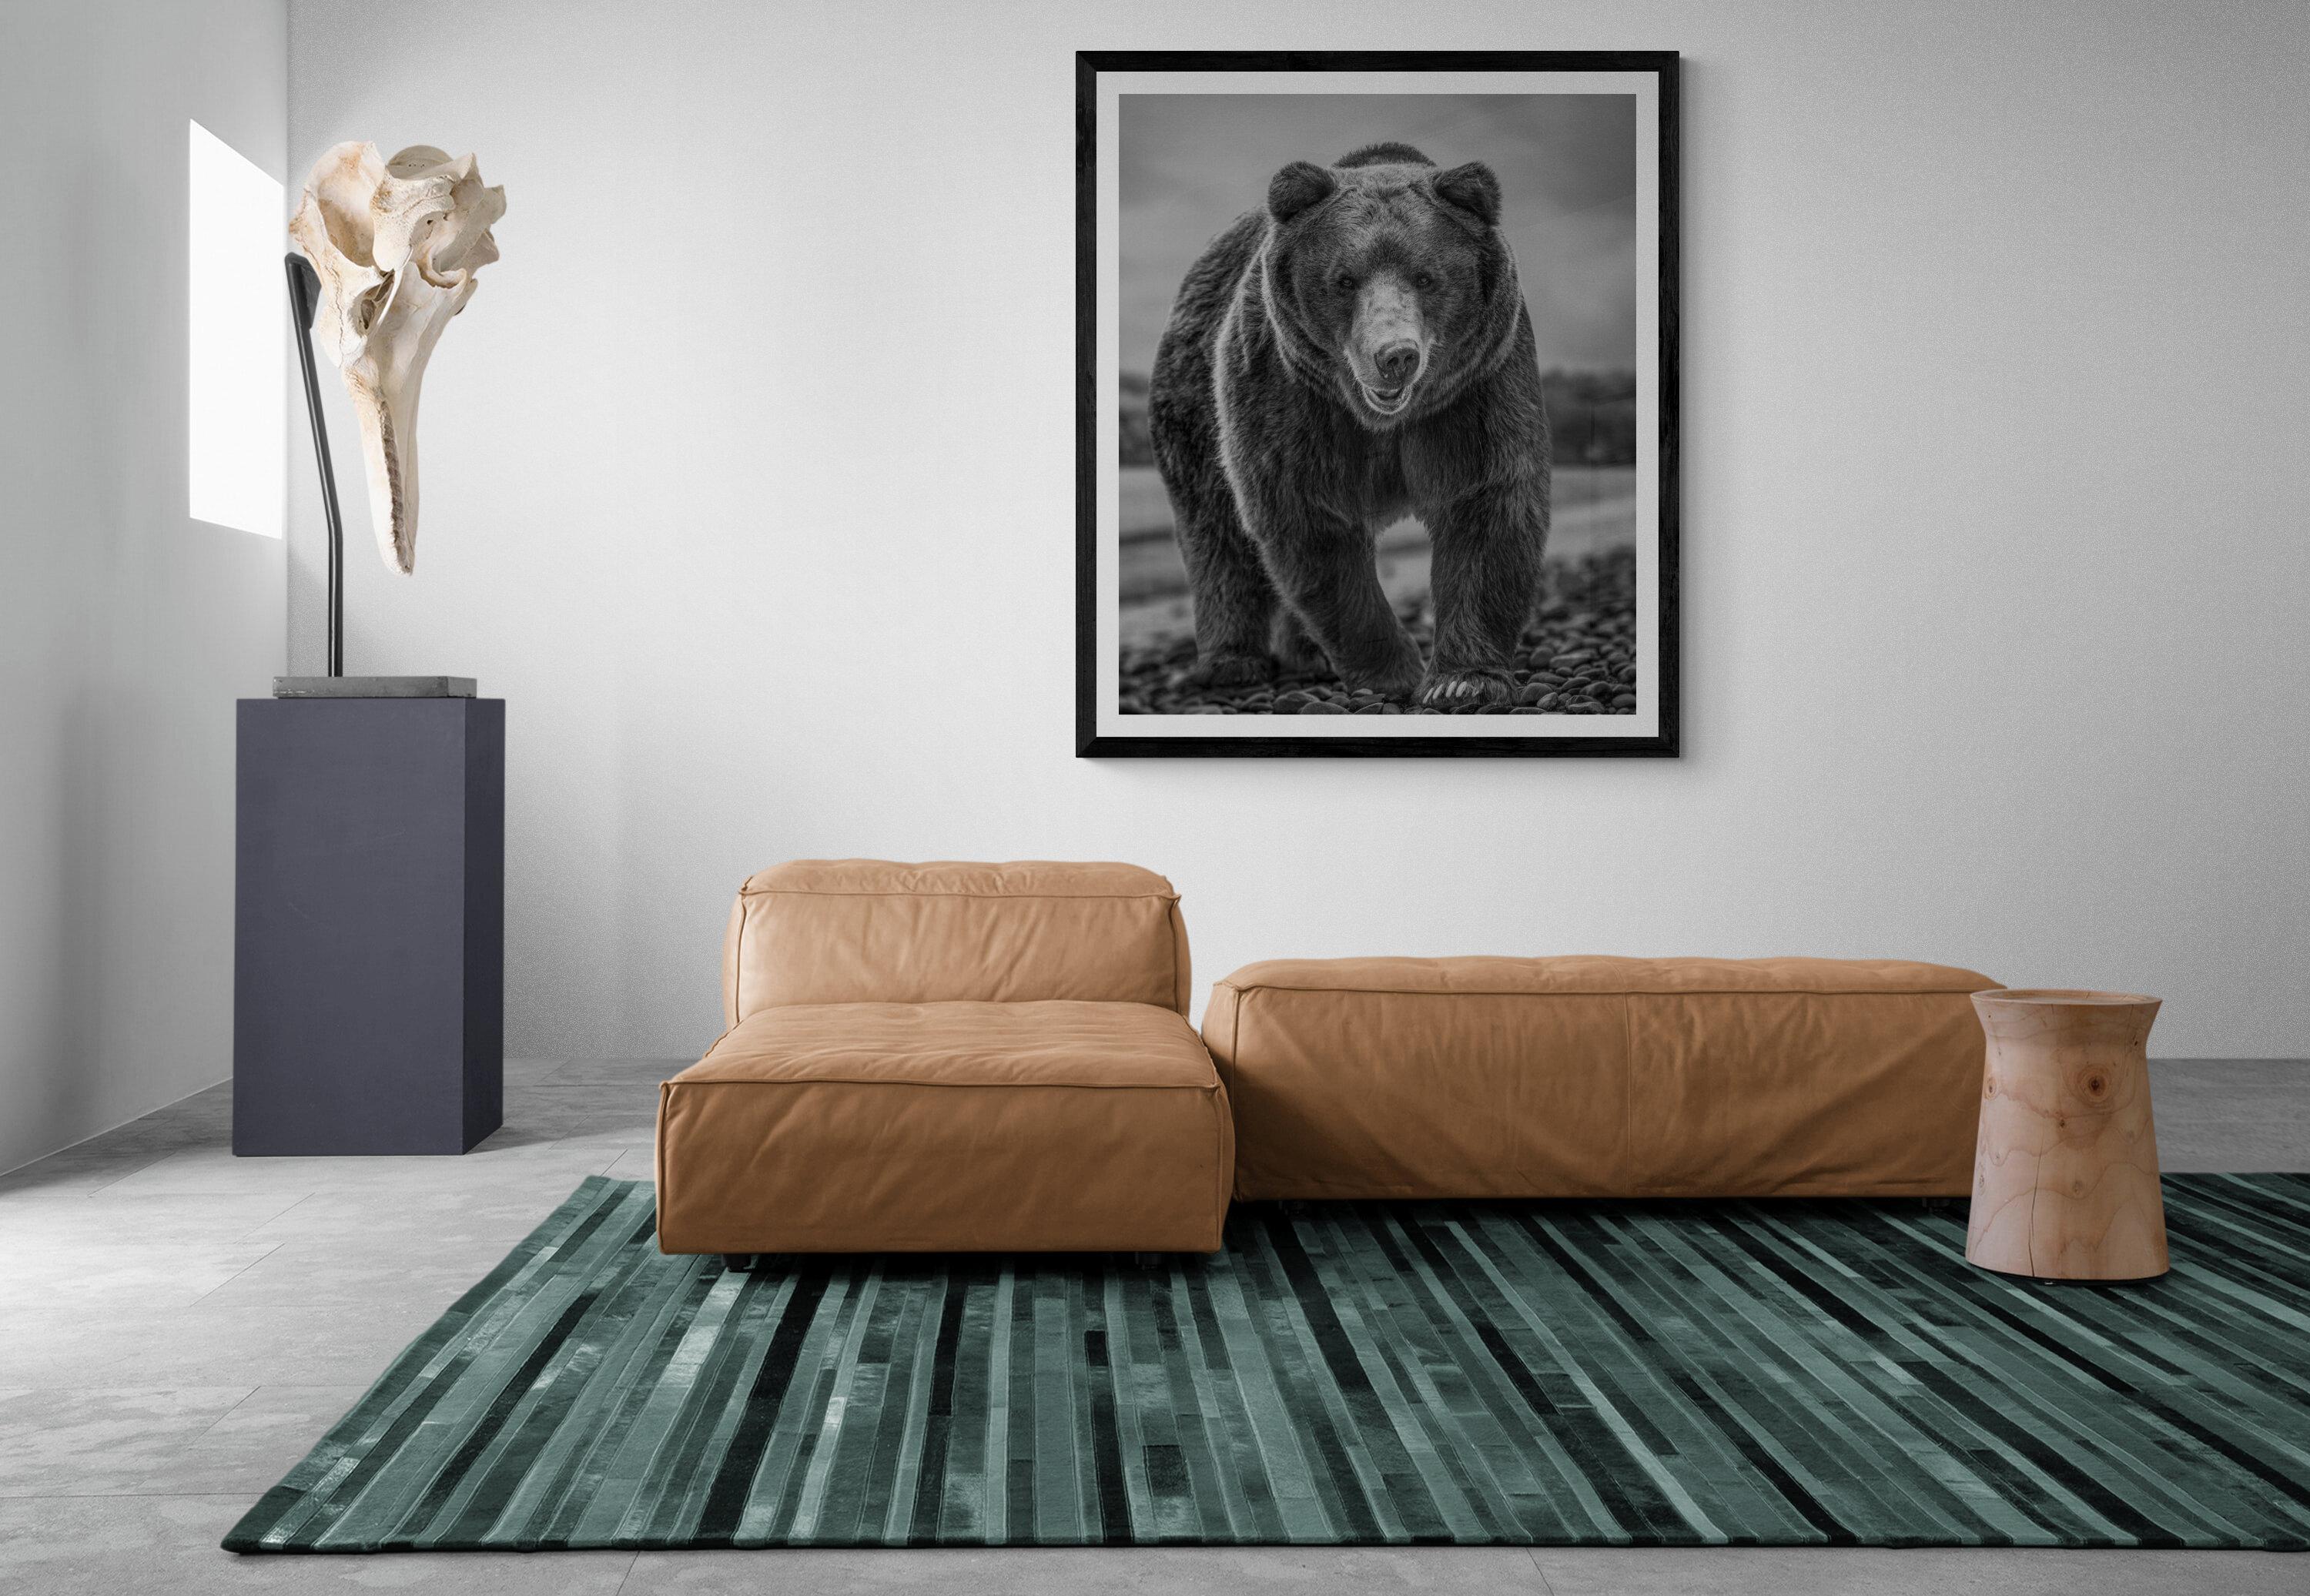 Il s'agit d'une photographie contemporaine d'un ours brun.  
Ceci a été tourné sur l'île de Kodiak en 2019. 
36x48 Edition de 12
Papier pigmentaire d'archivage 
Encres d'archivage
Signé et numéroté par Shane Russeck
Encadrement disponible.